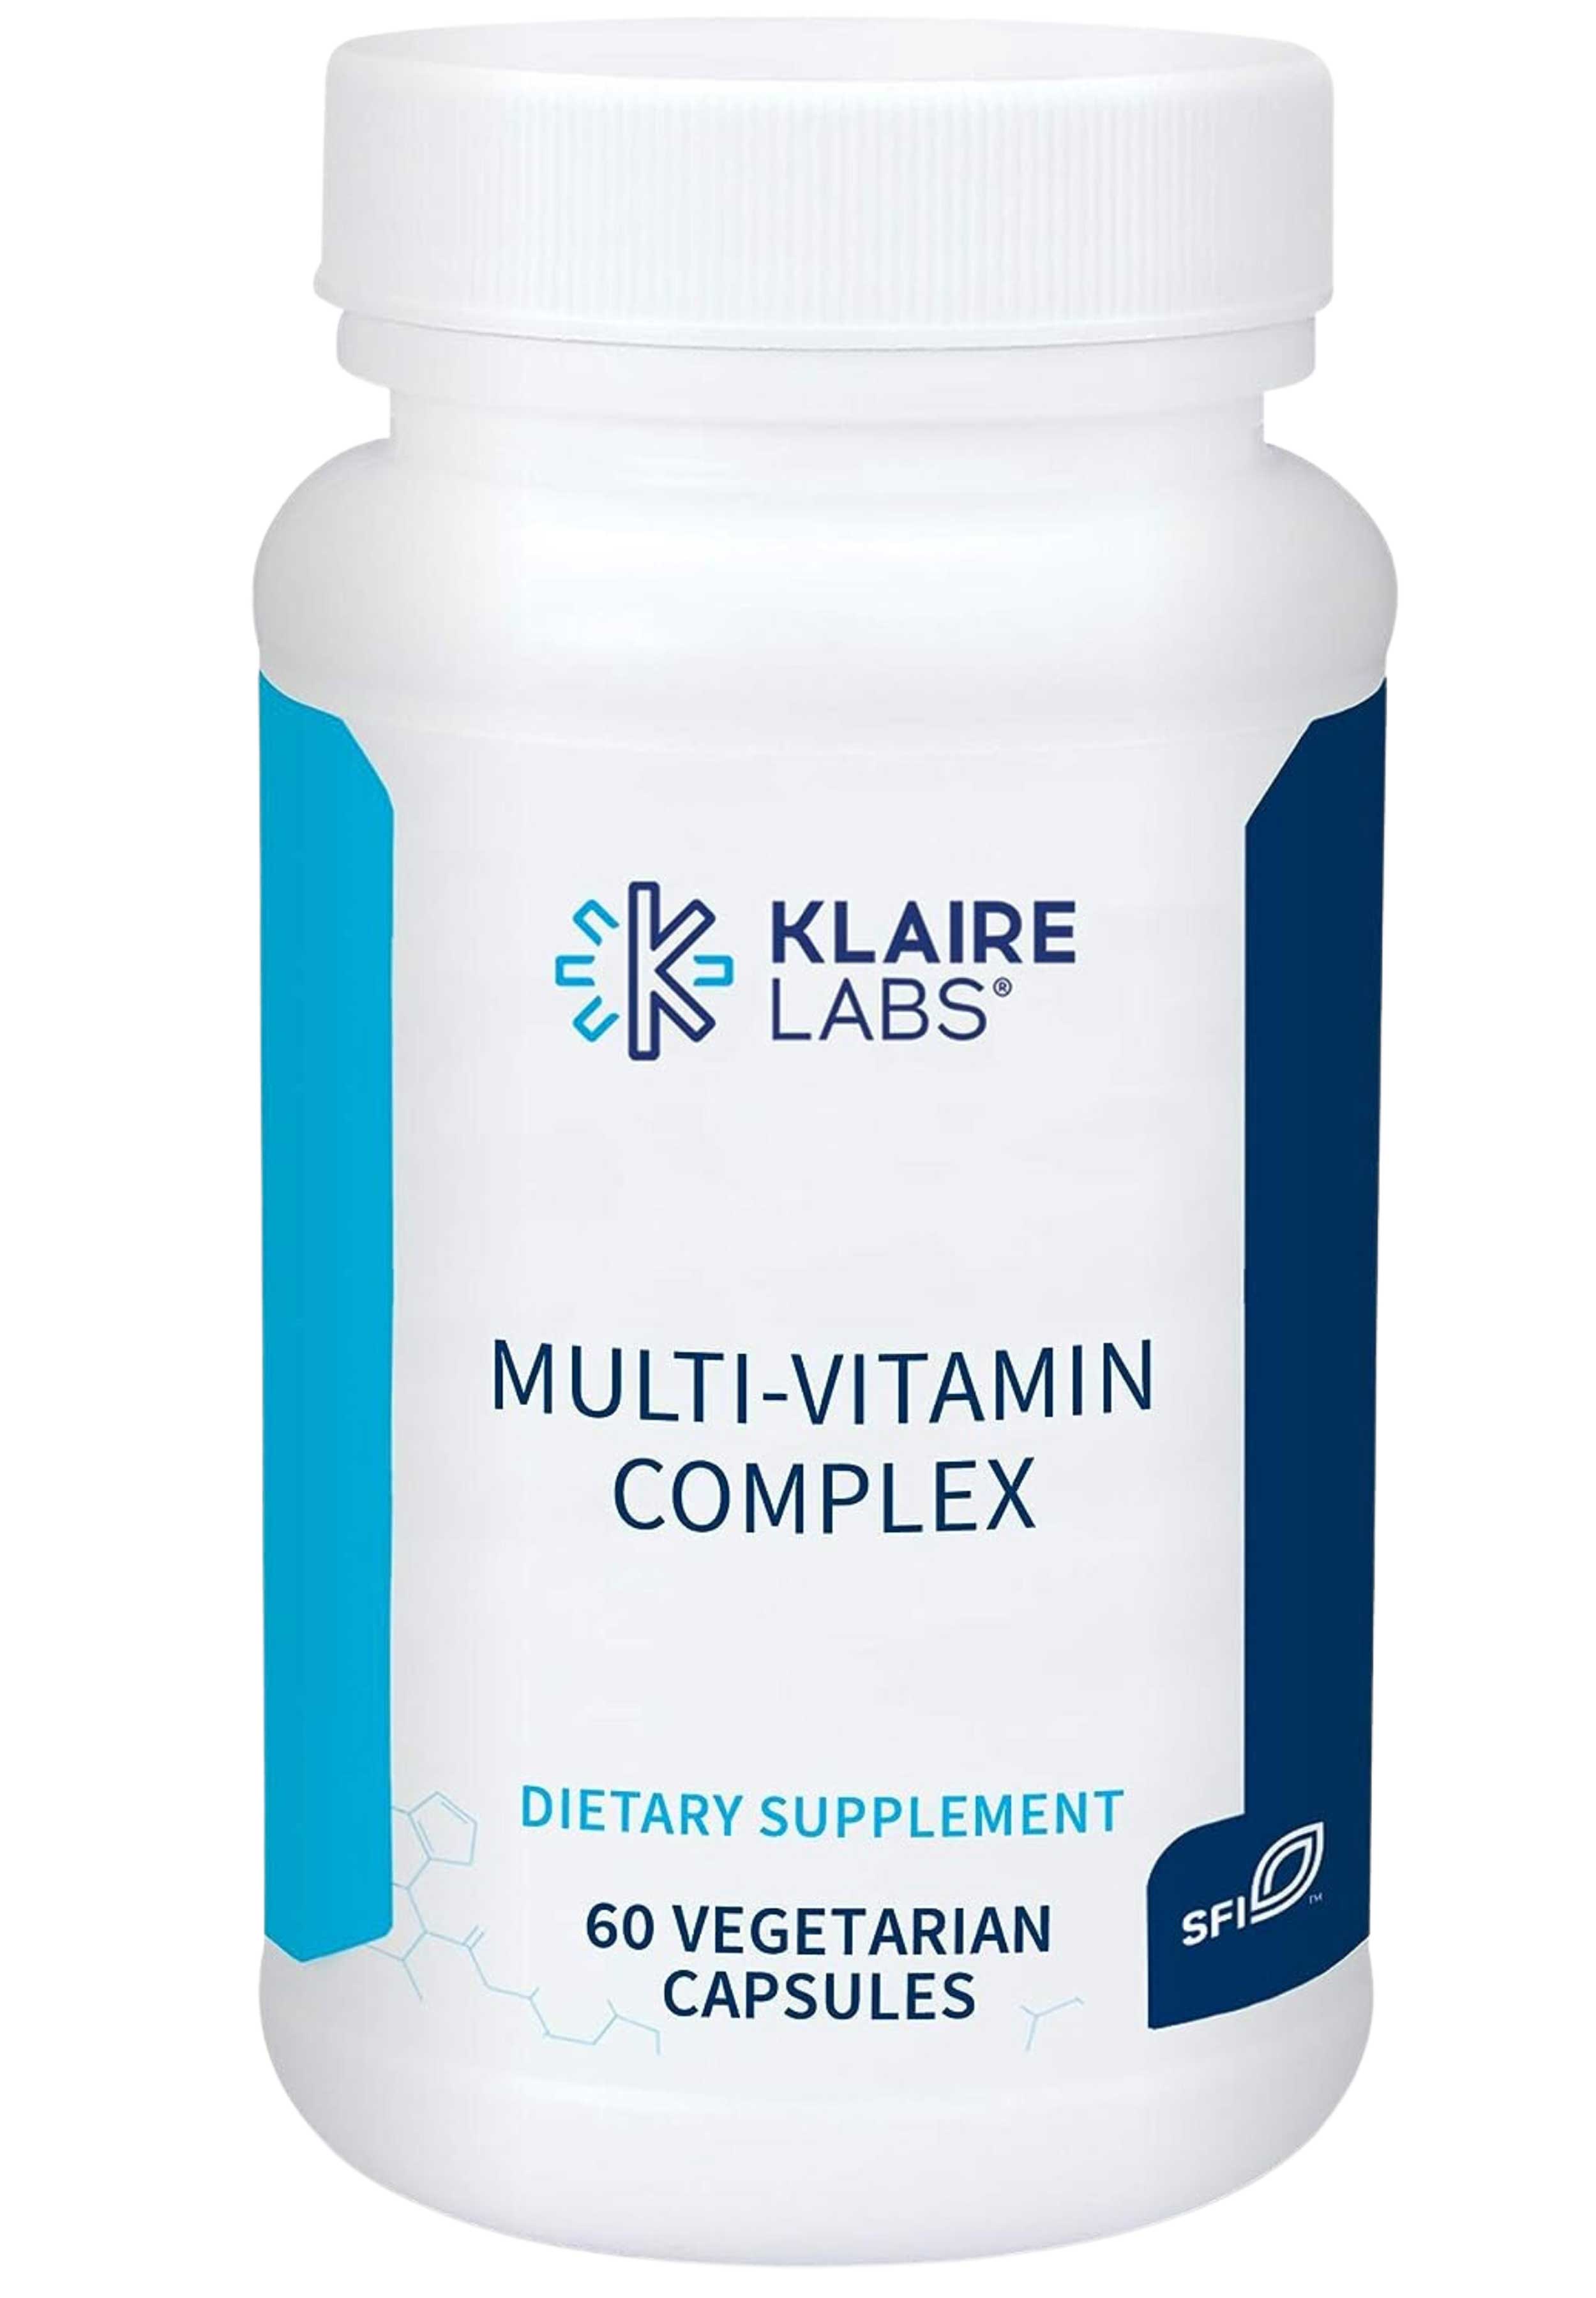 Klaire Labs Multi-Vitamin Complex